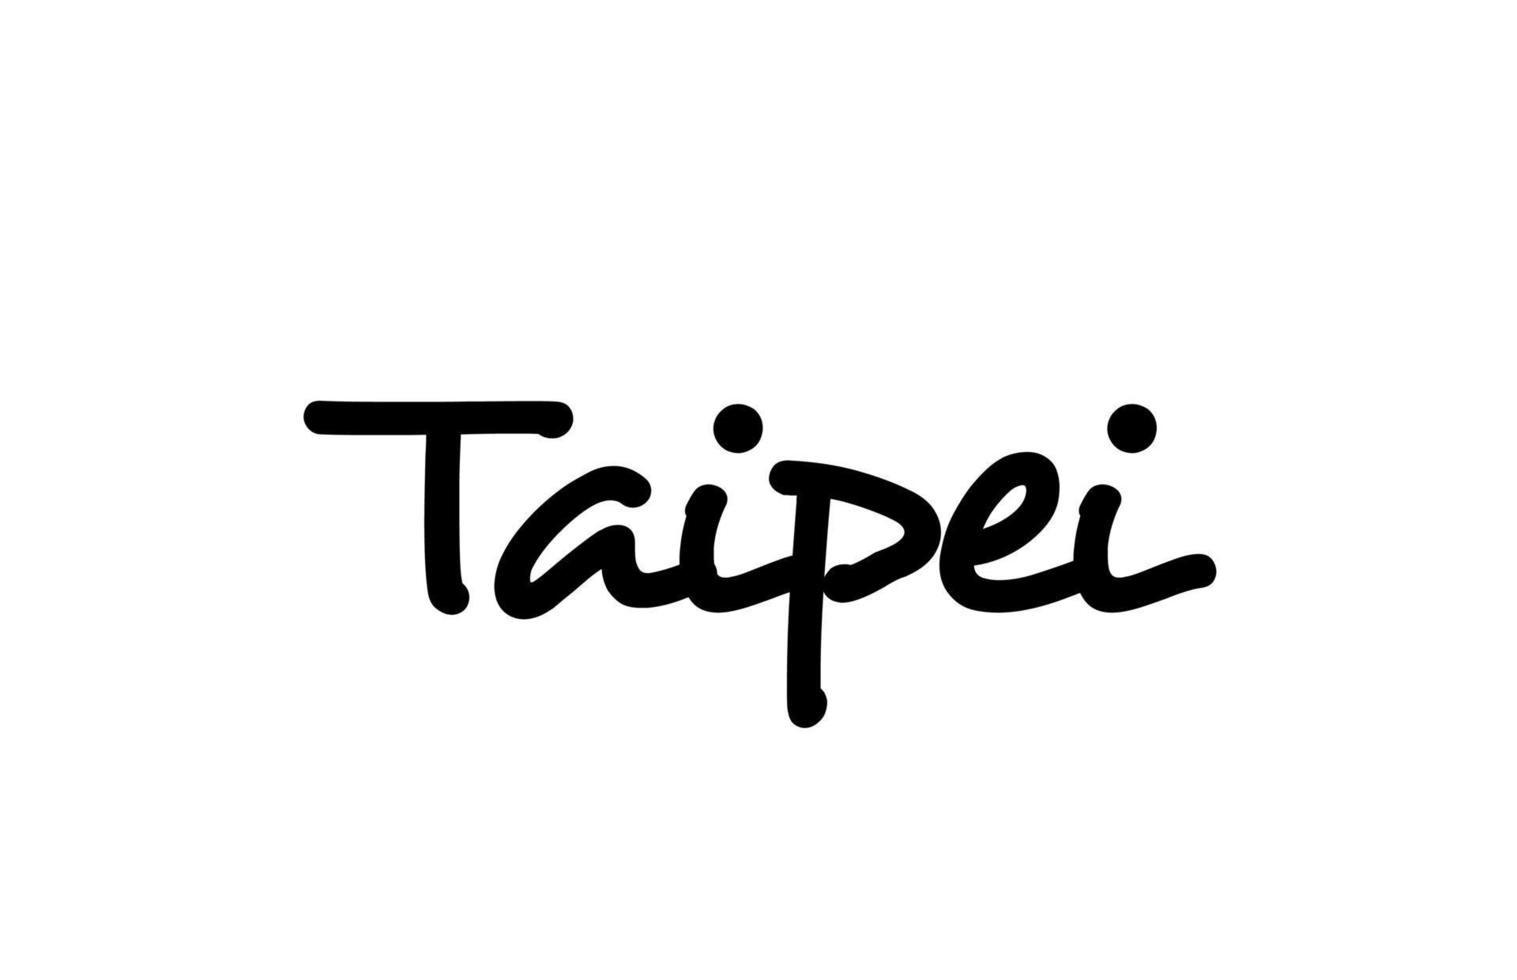 taipei stad handskriven ord text hand bokstäver. kalligrafi text. typografi i svart färg vektor